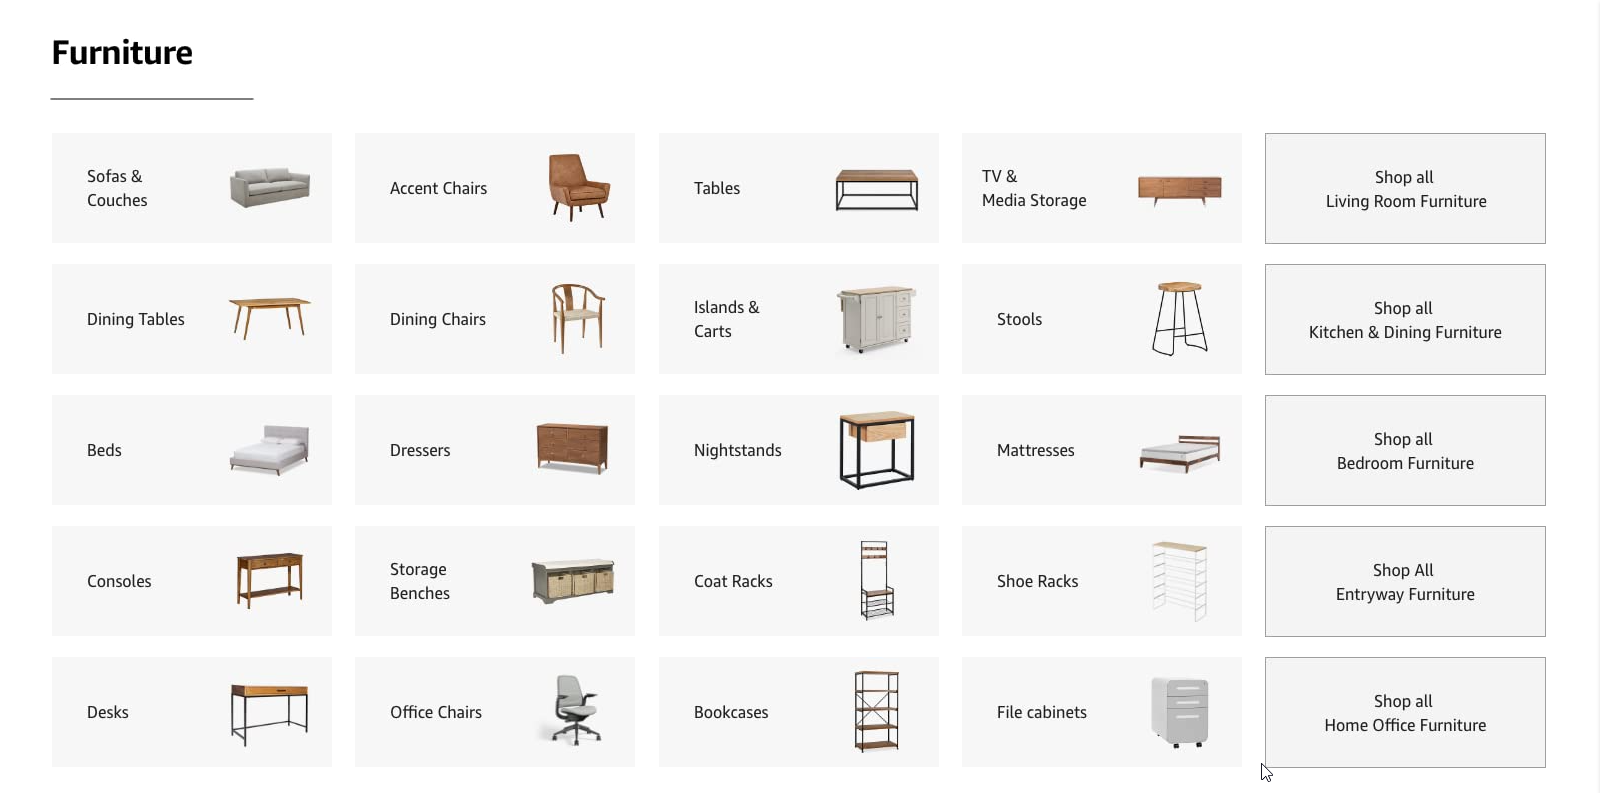 Furniture catalog on Amazon marketplace